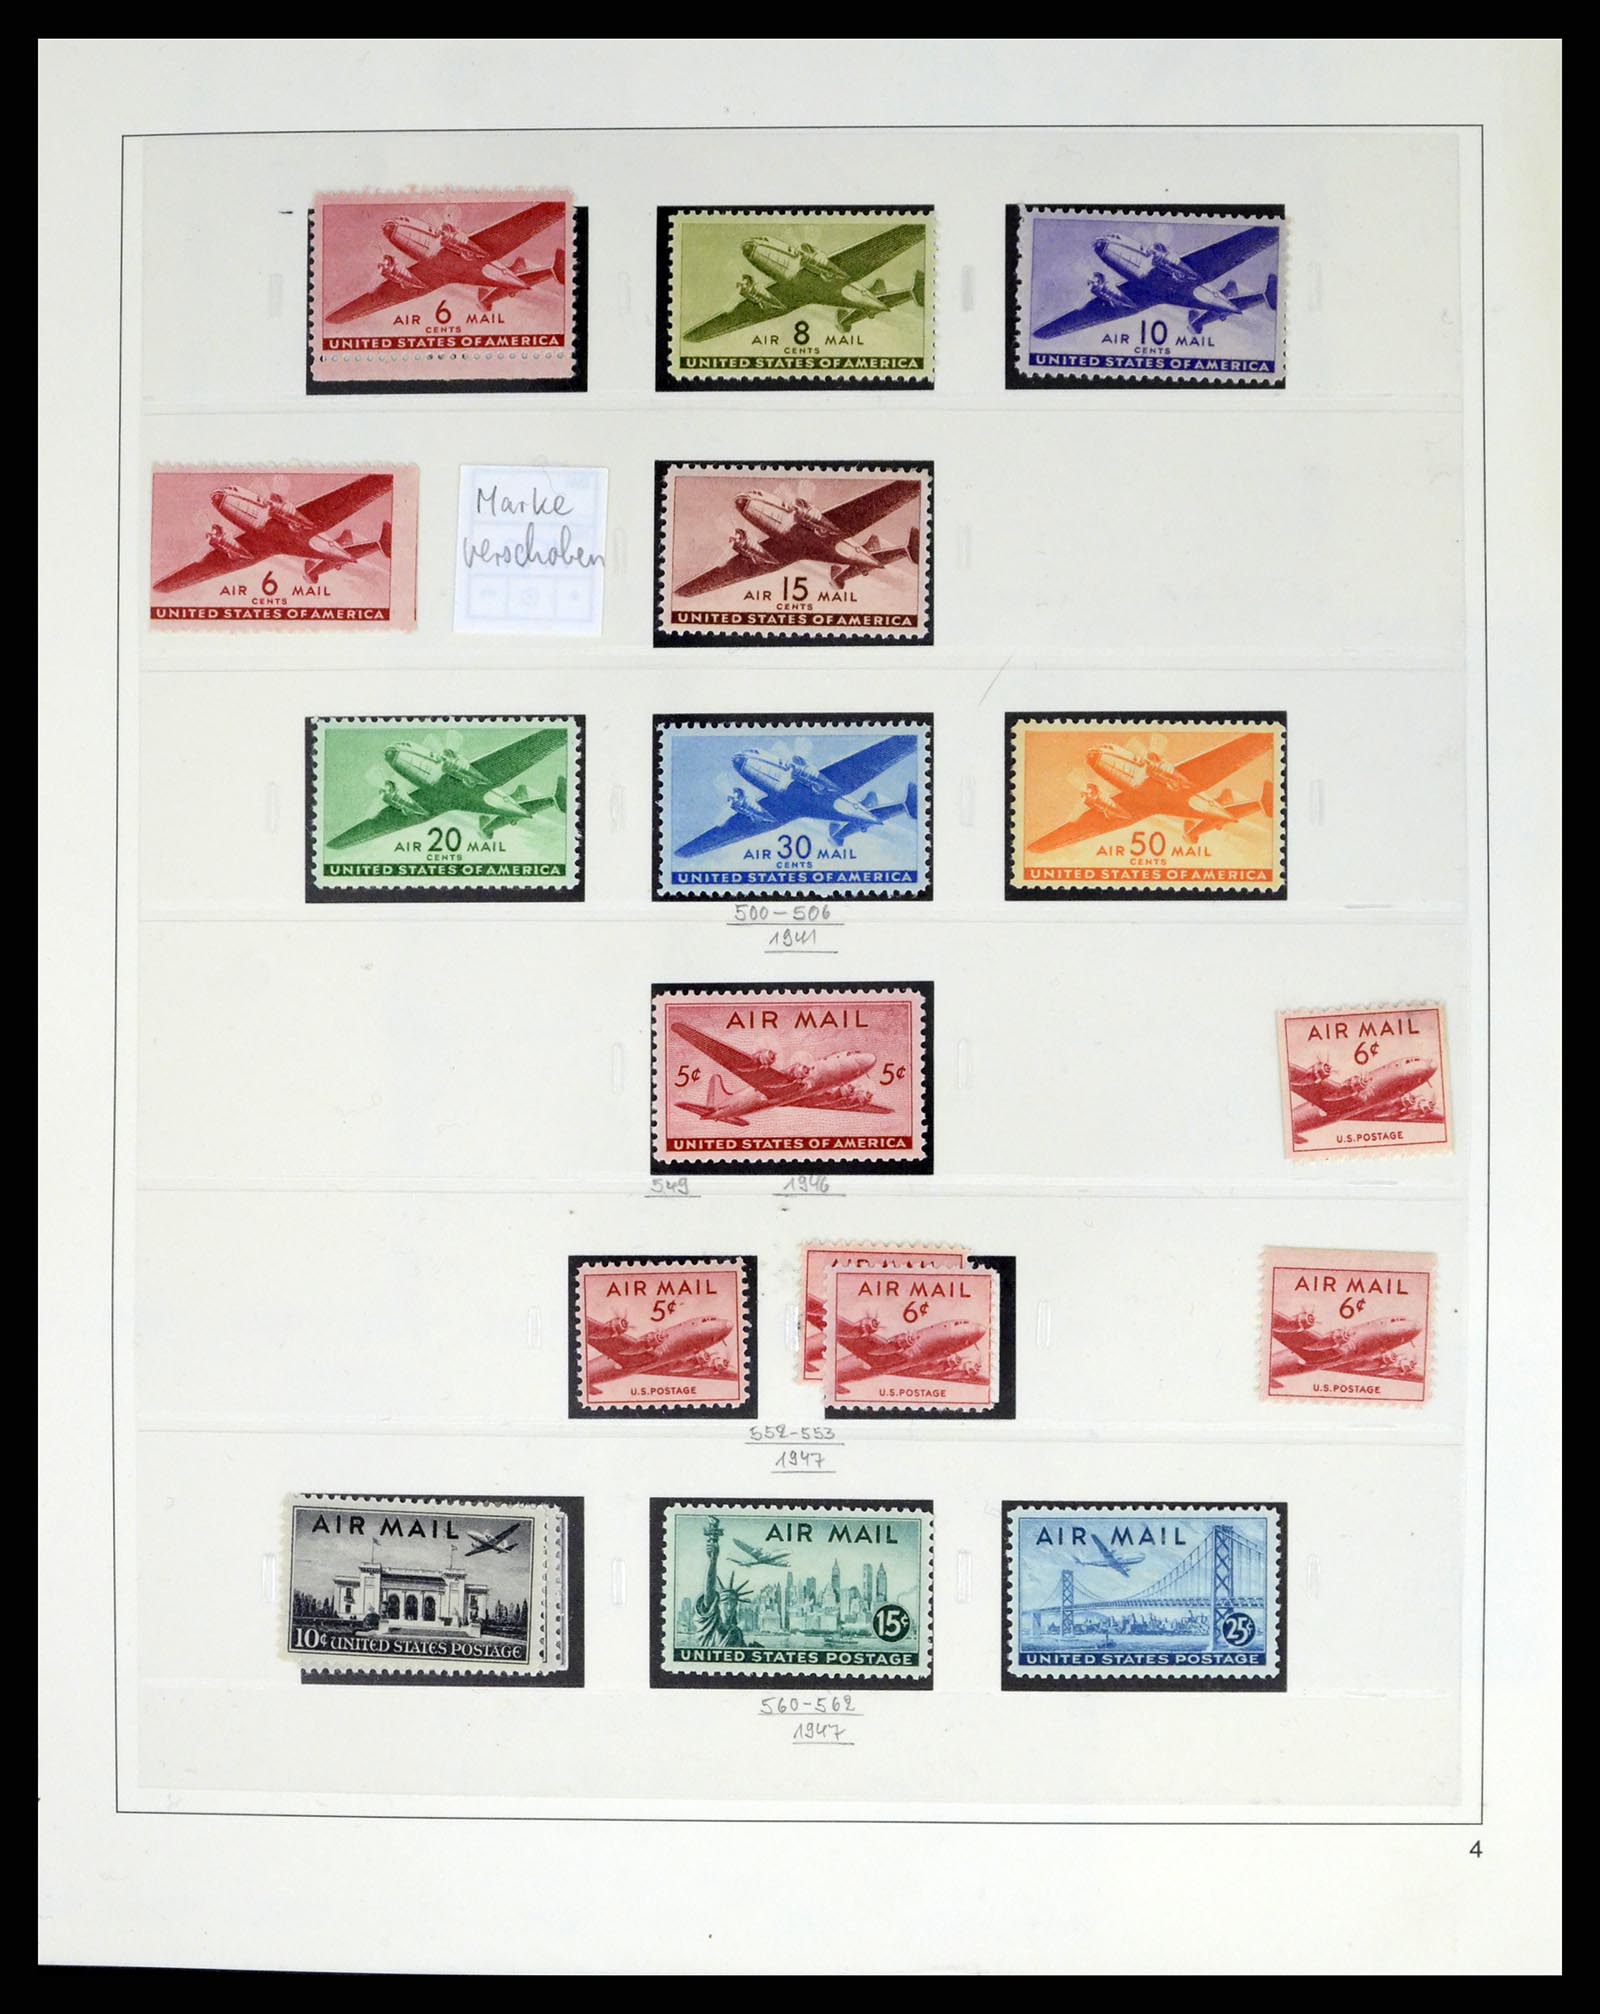 37551 203 - Stamp collection 37551 USA 1851-2001.